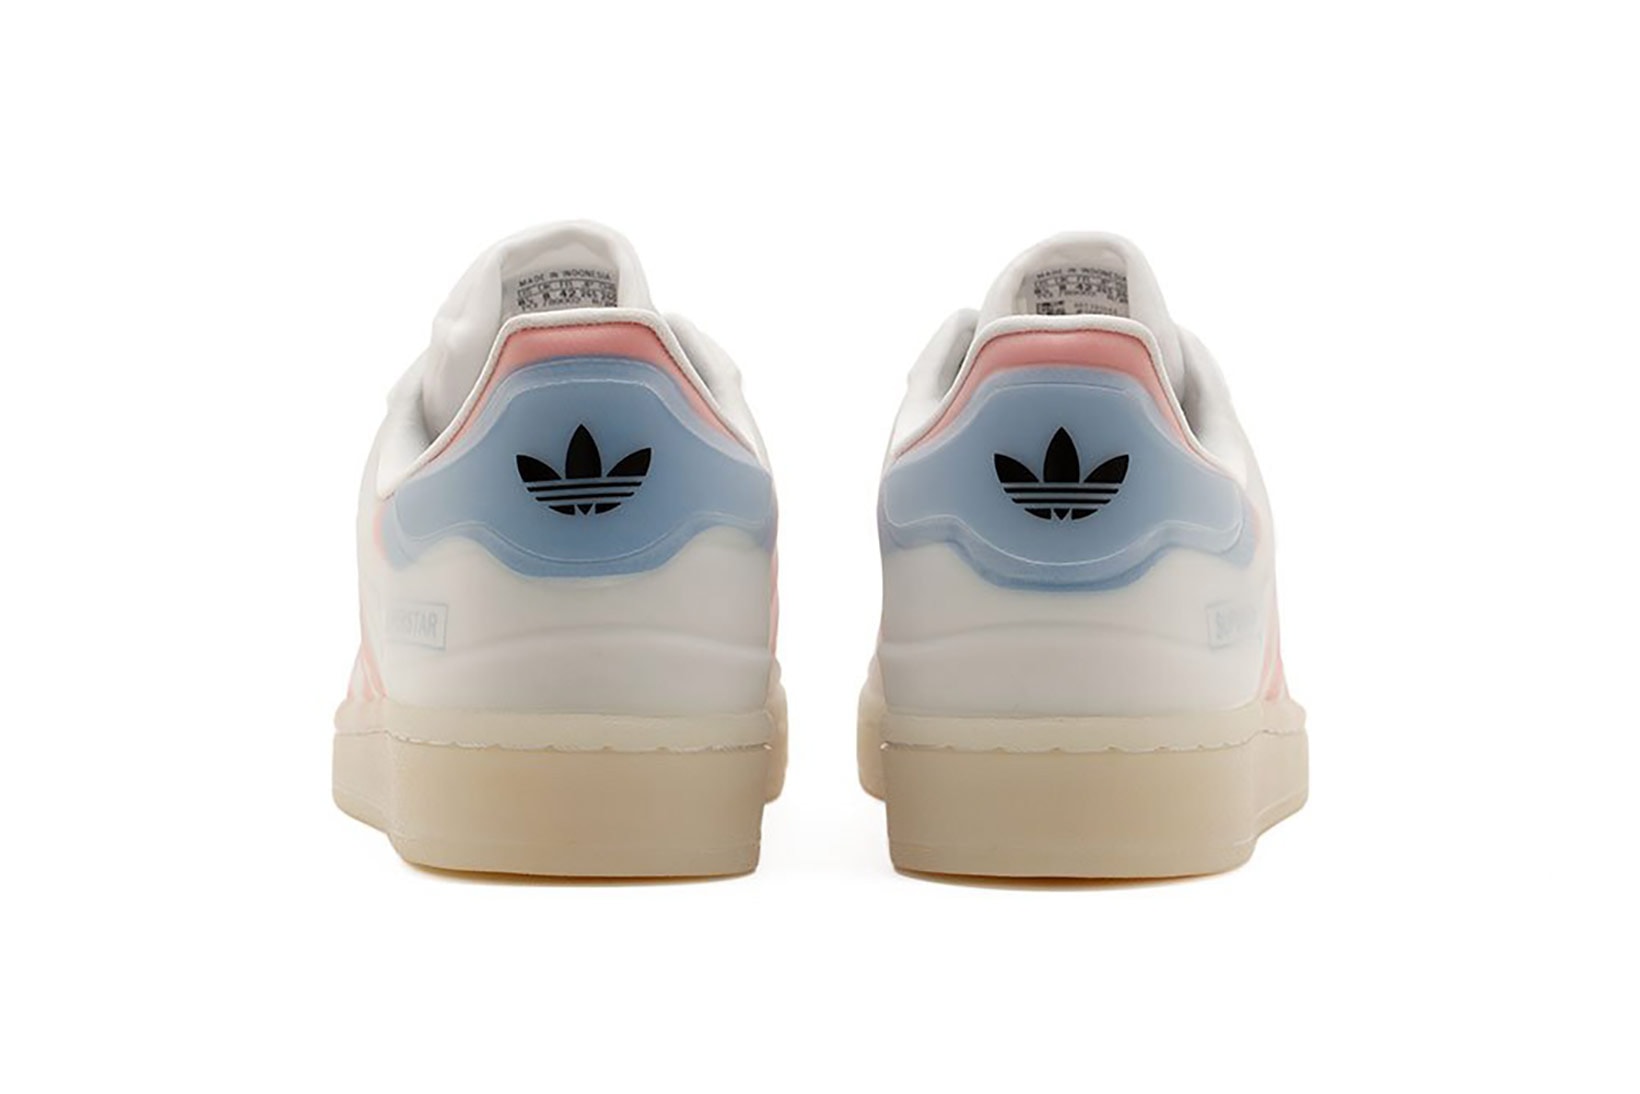 adidas superstar futurshell sneakers white coral pink blue colorway footwear shoes kicks sneakerhead heel